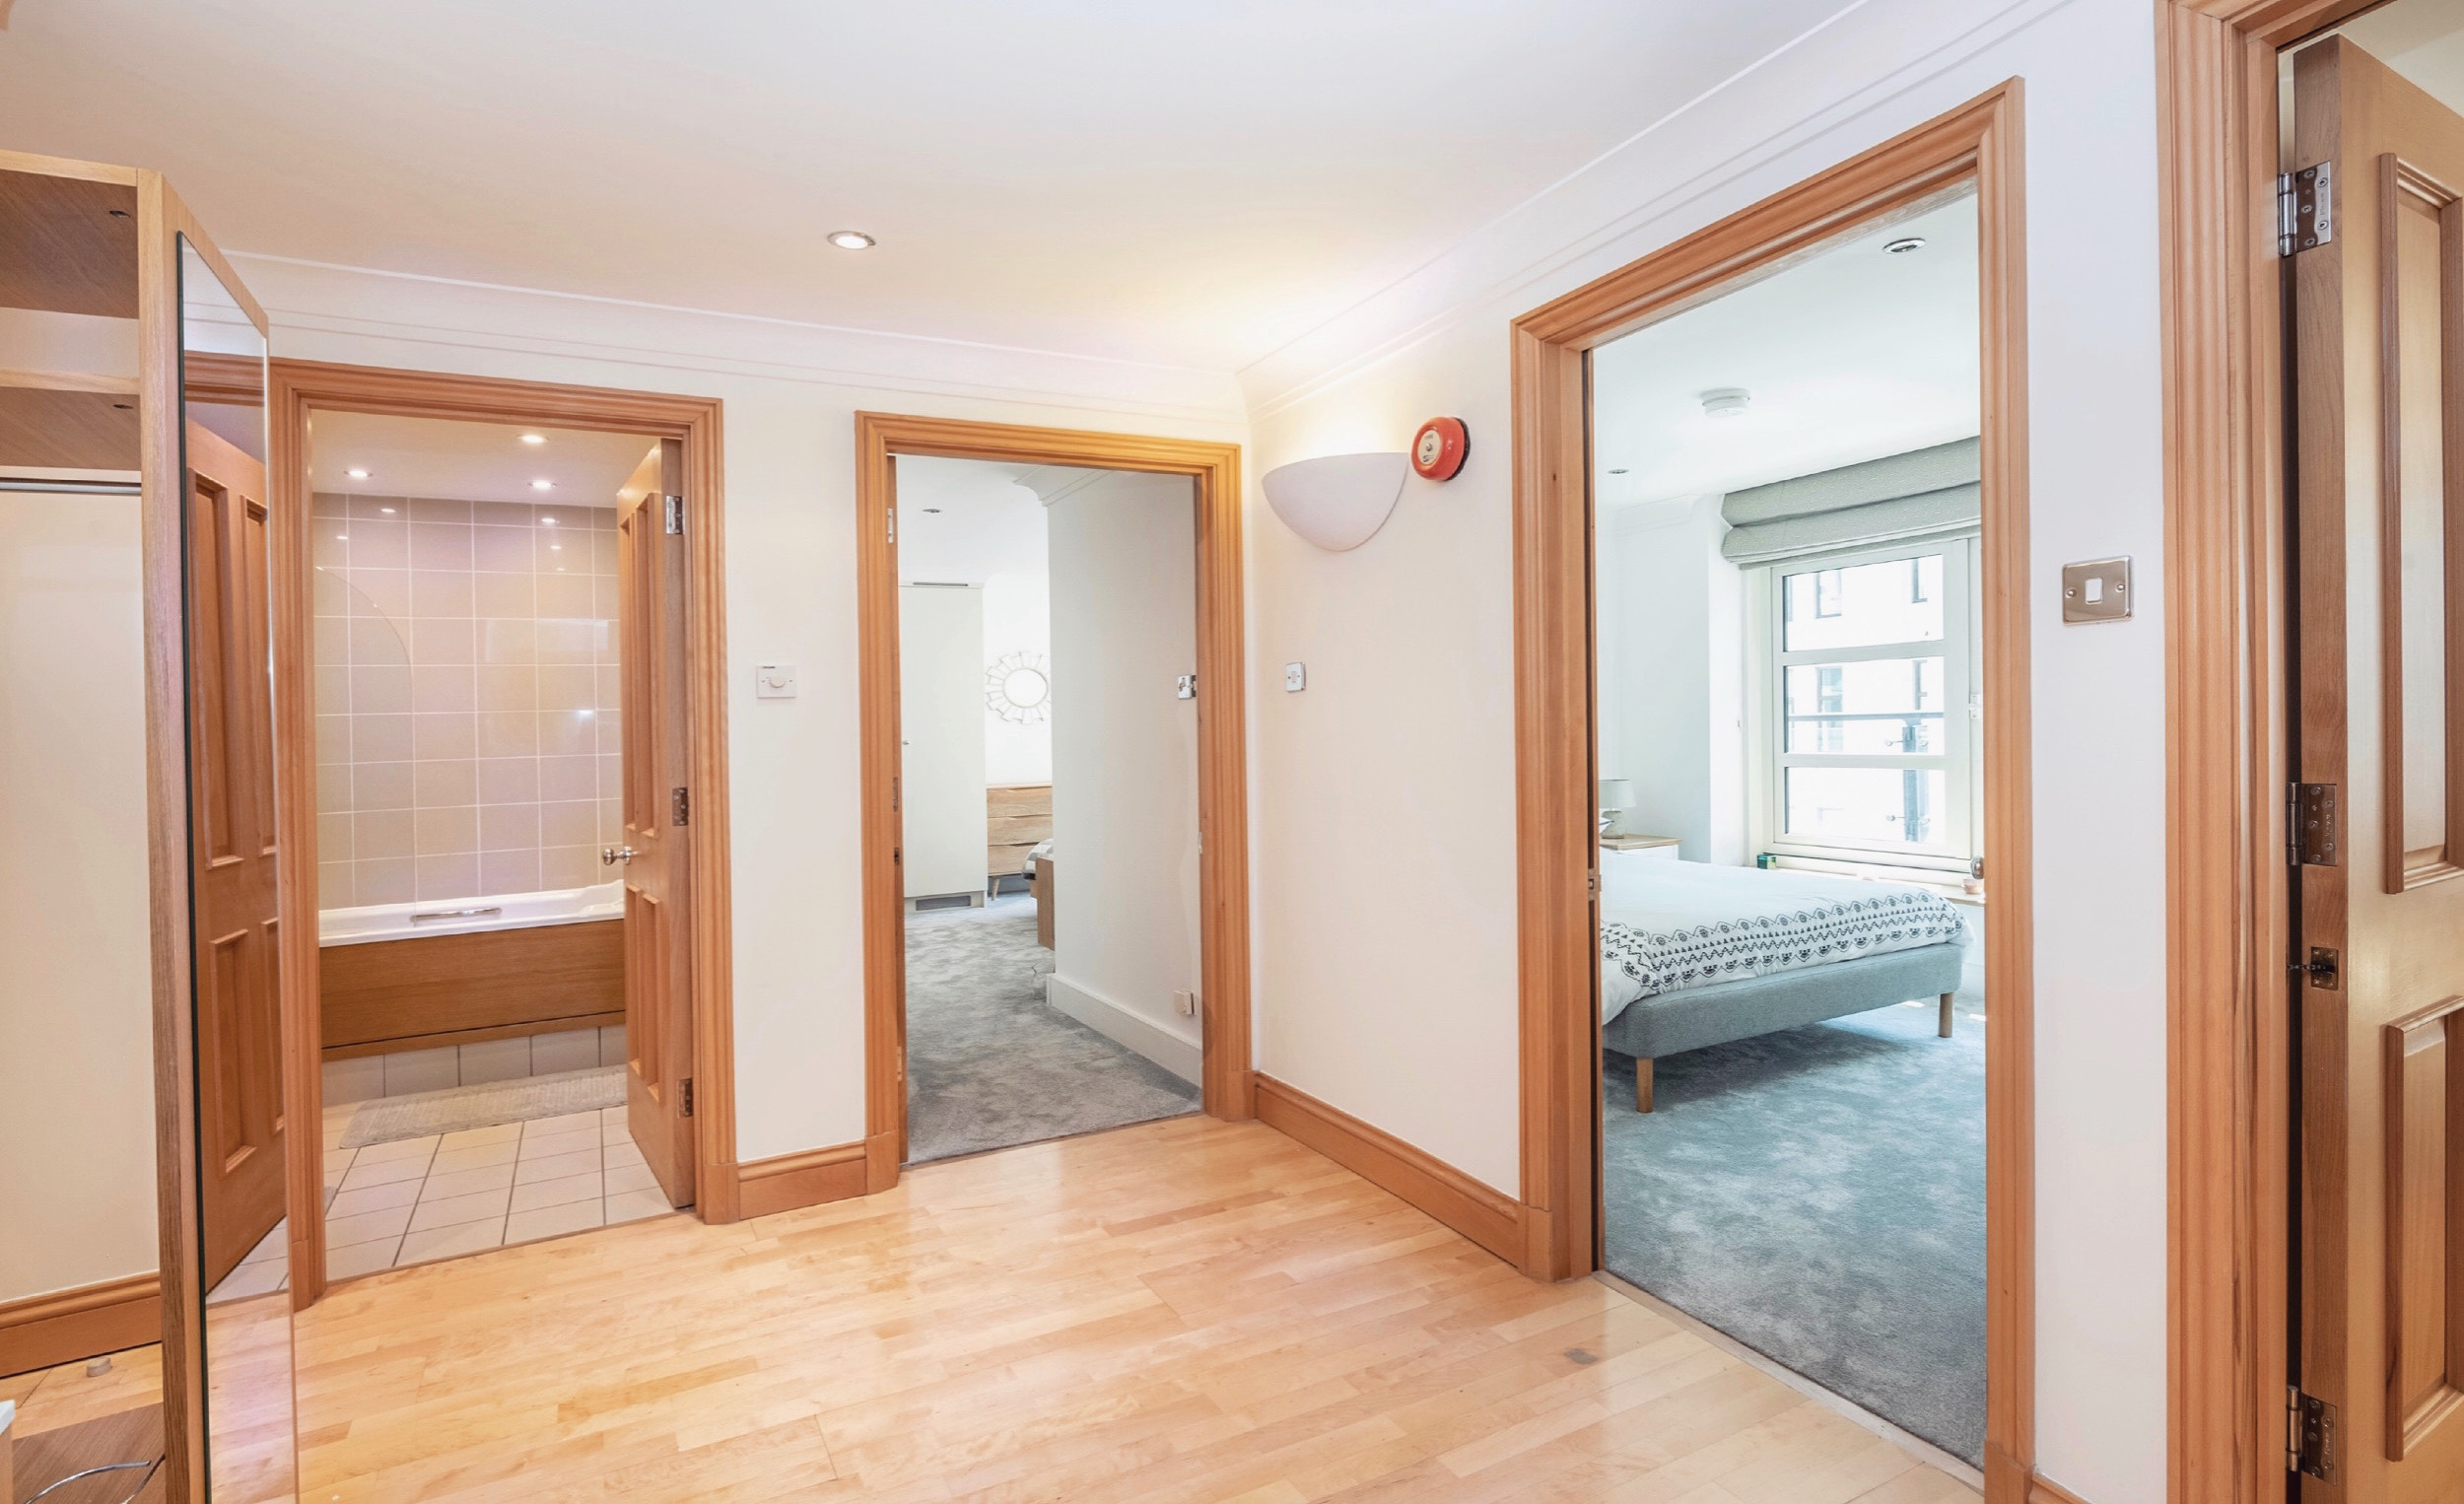 Lovelydays luxury service apartment rental - Soho - Argyll Street Penthouse - Owner - 2 bedrooms - 2 bathrooms - Hallway - 5a60054000f6 - Lovelydays